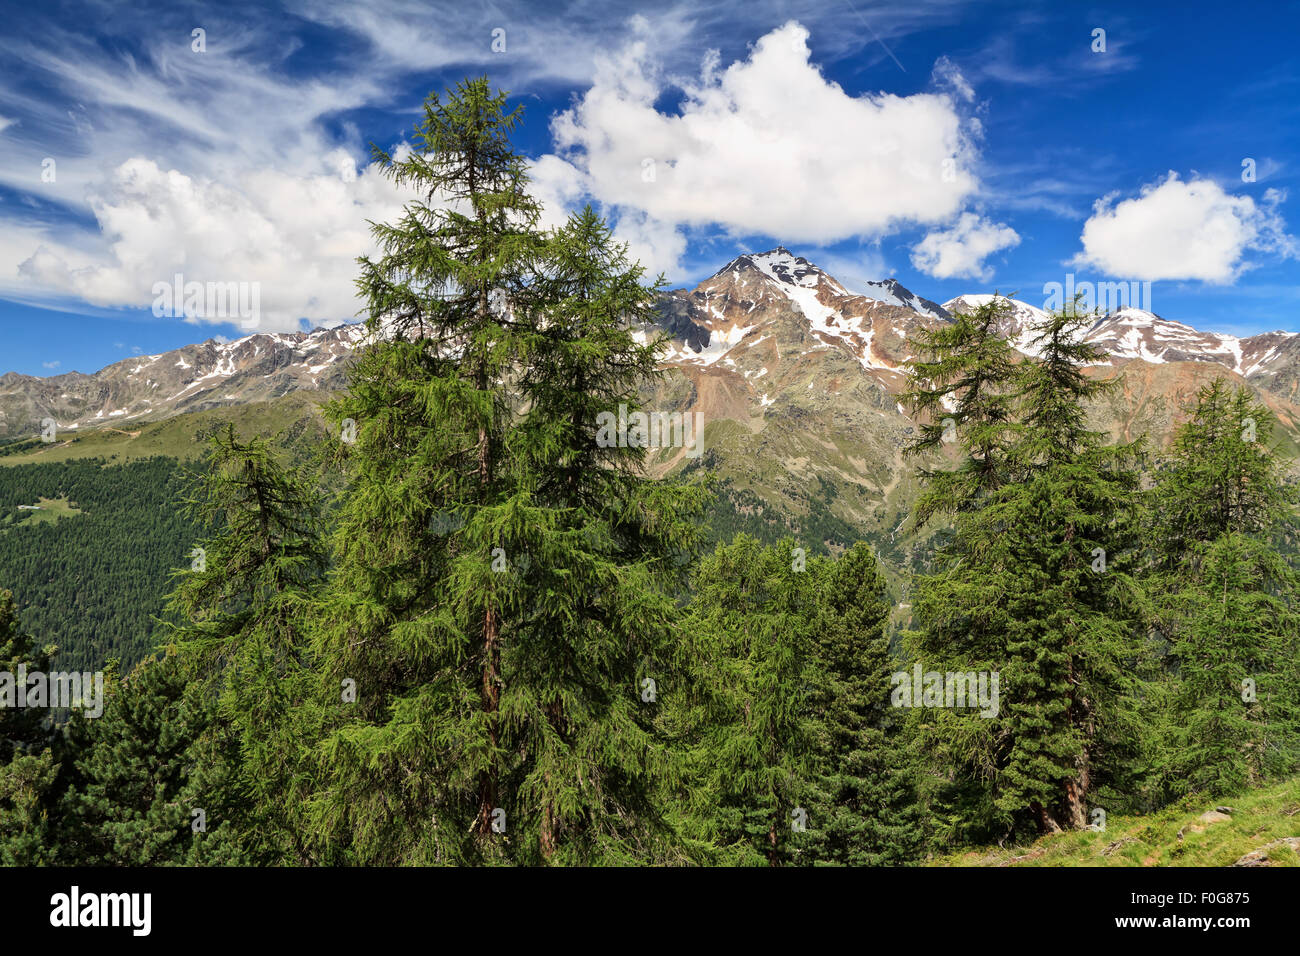 Valle di Pejo con Vioz e Cevedale monte sullo sfondo, Trentino, Italia Foto Stock